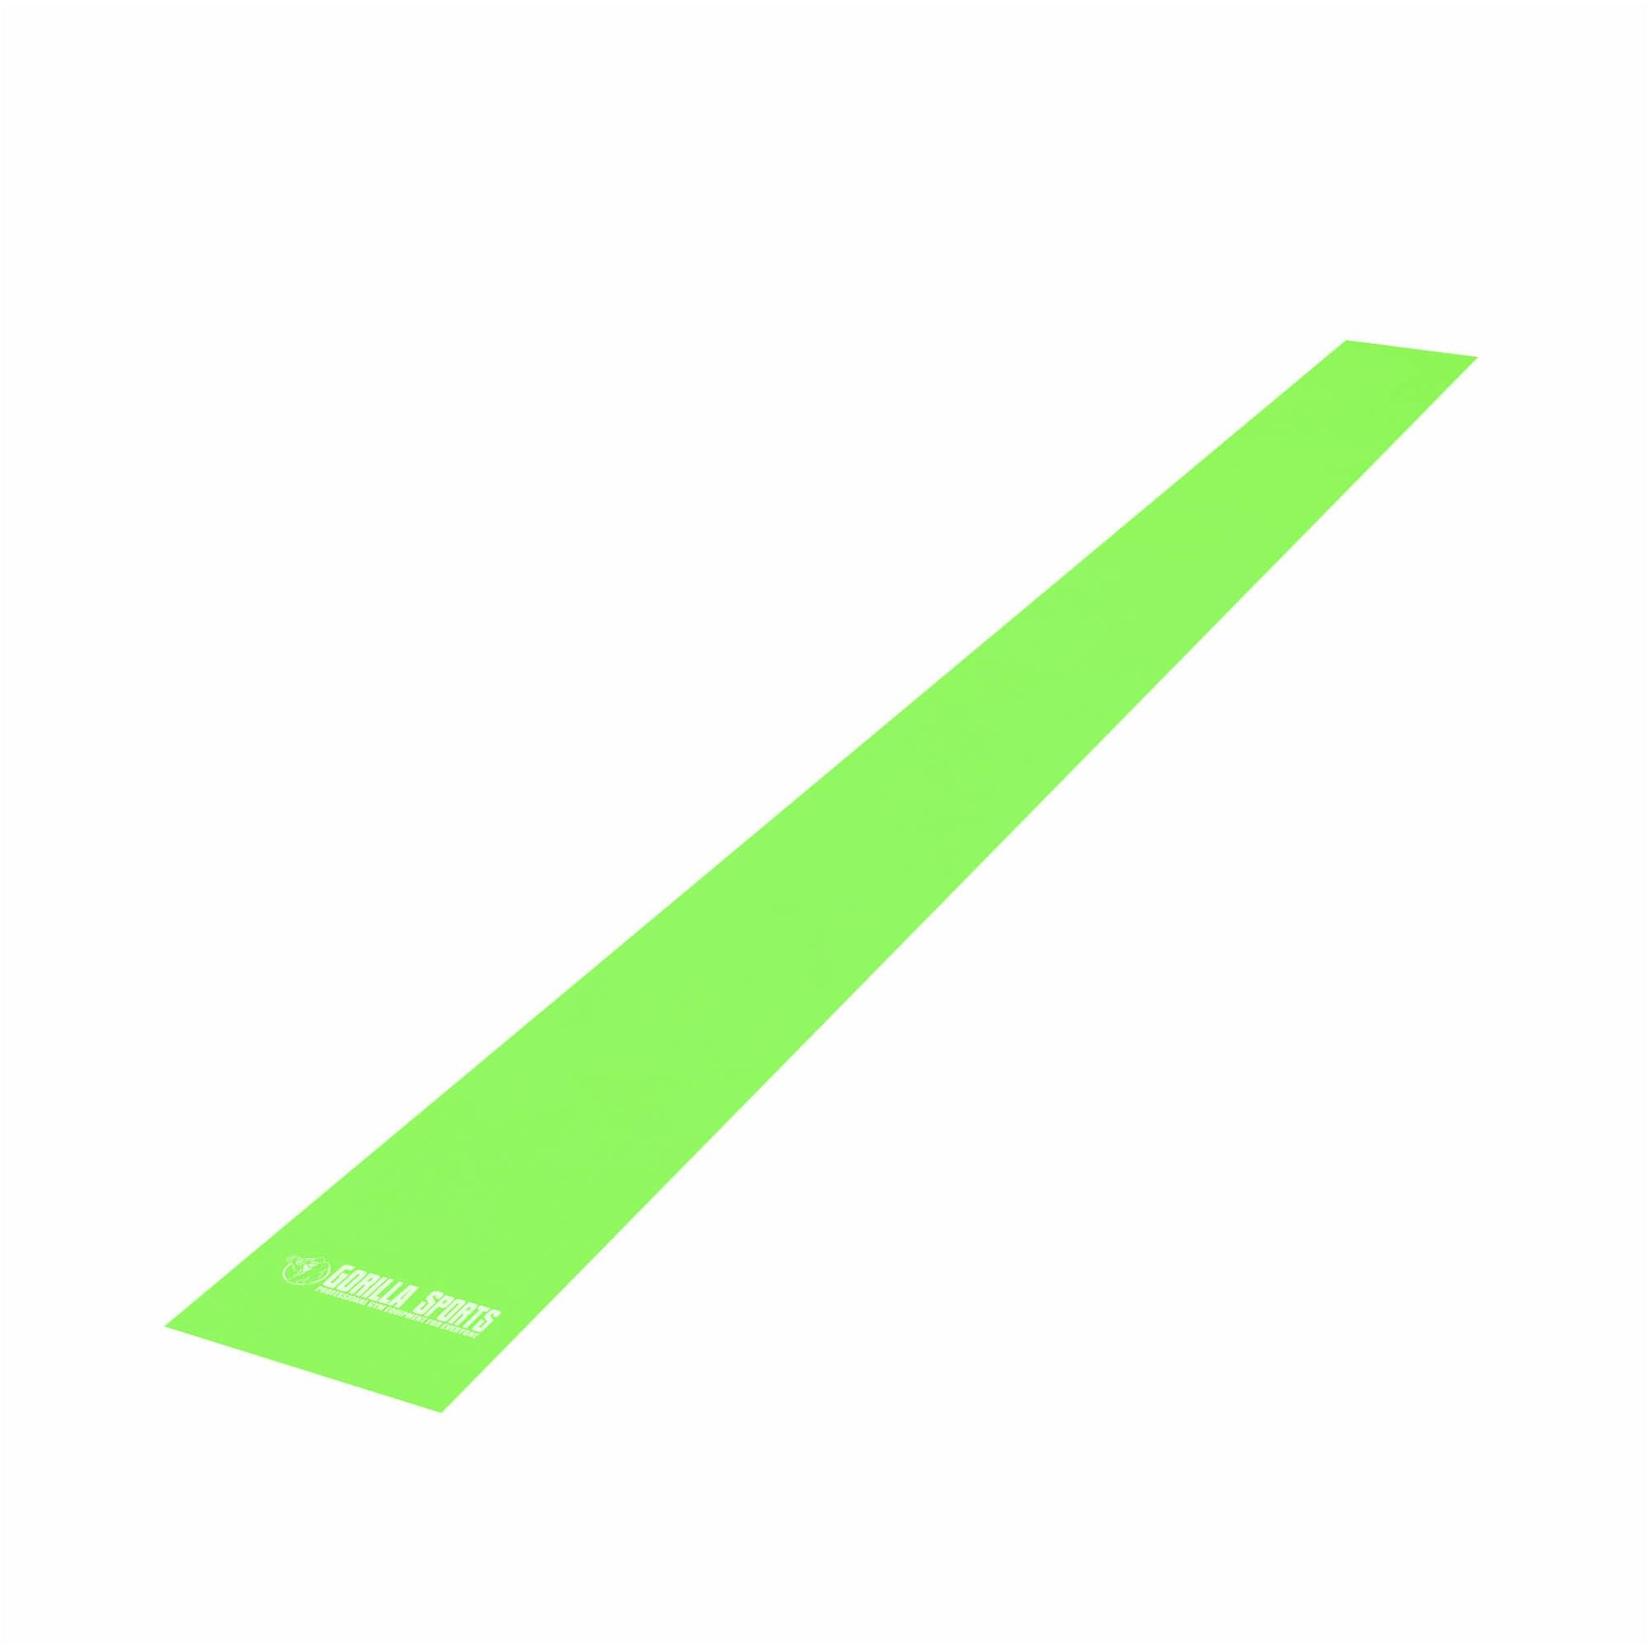 Selected image for GORILLA SPORTS Elastična traka za vežbanje 120 cm zelena